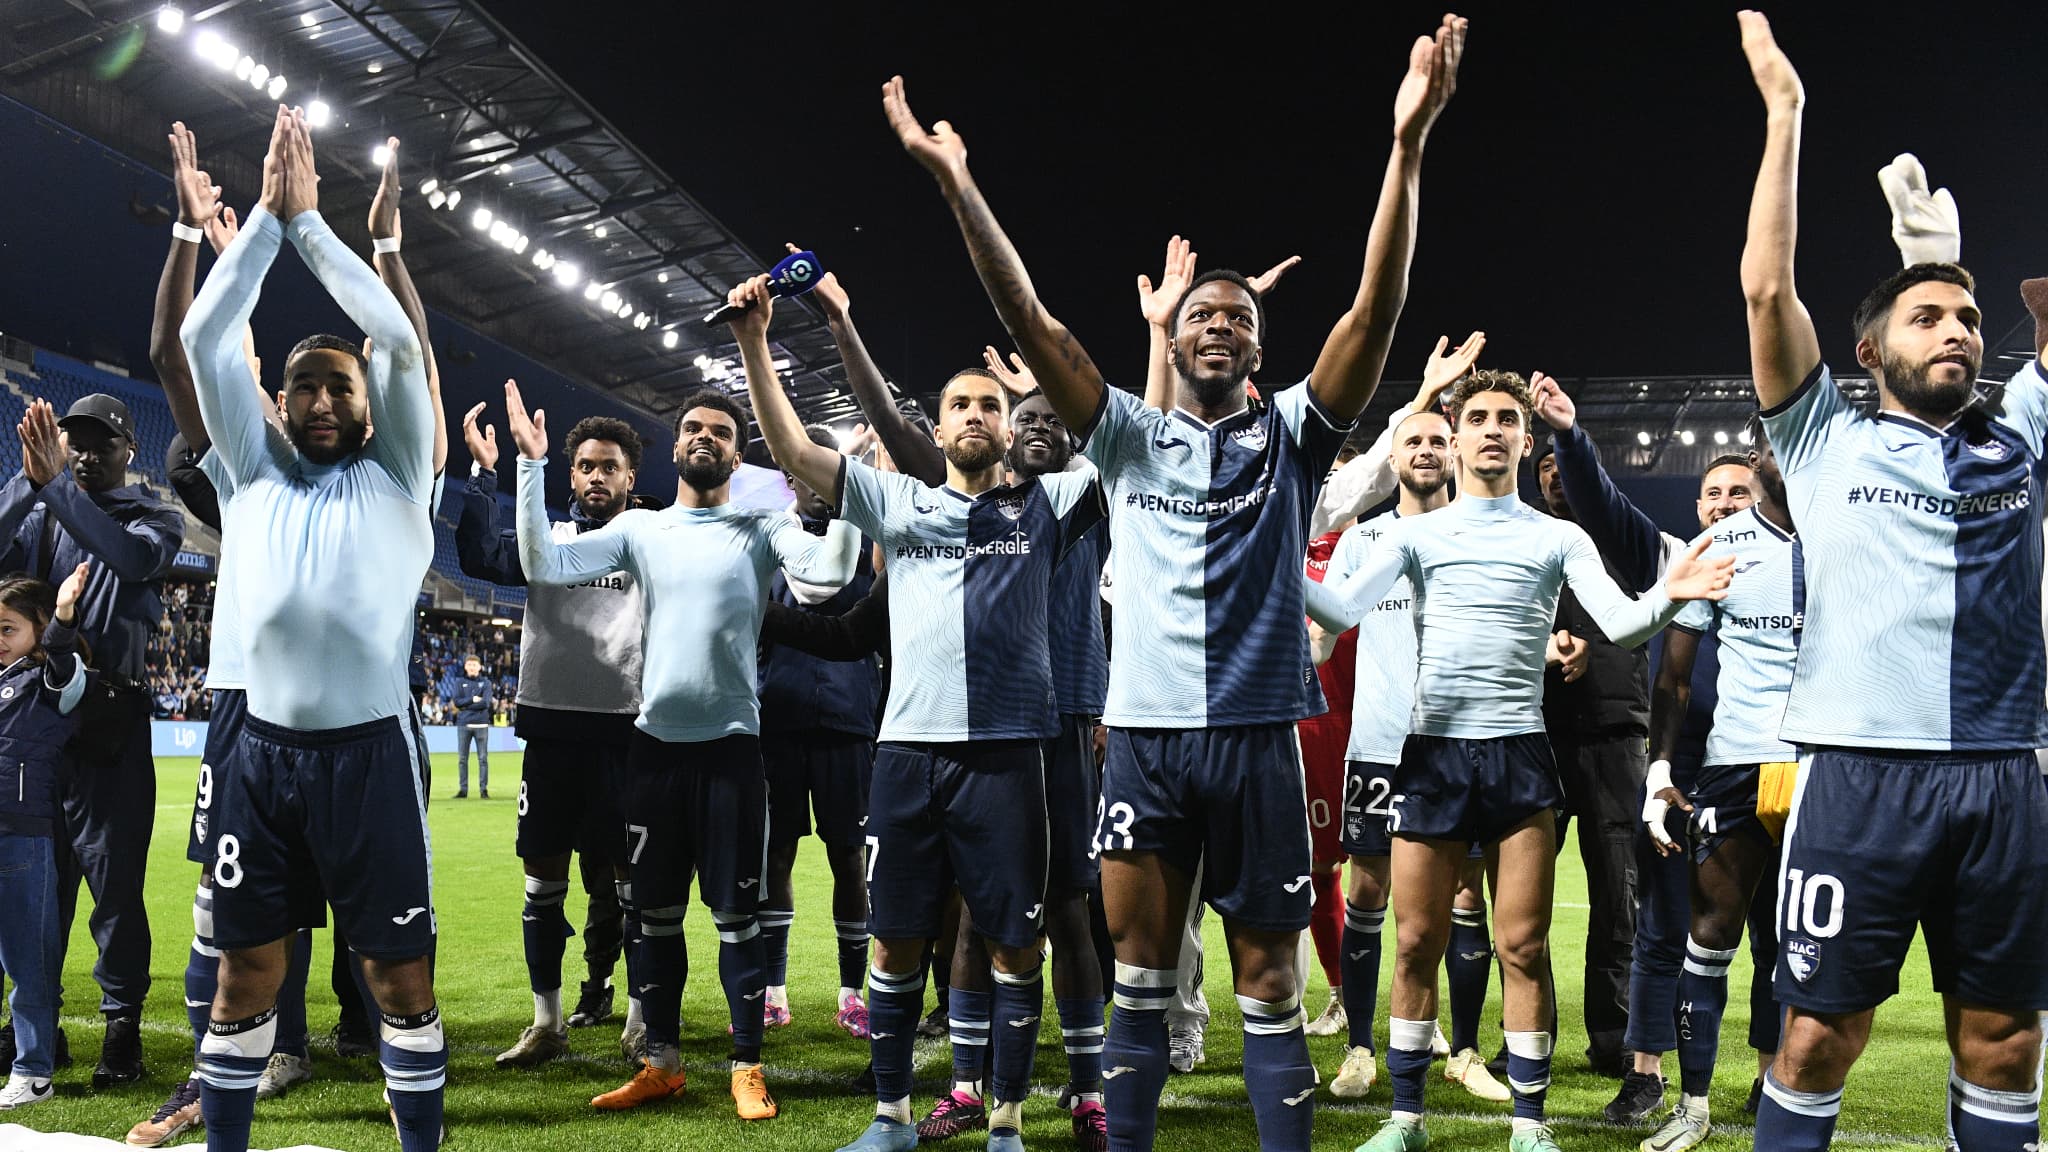 Live – Ligue 2 (38e dag): De perfecte start voor HAC en Metz, twee wedstrijden geschorst